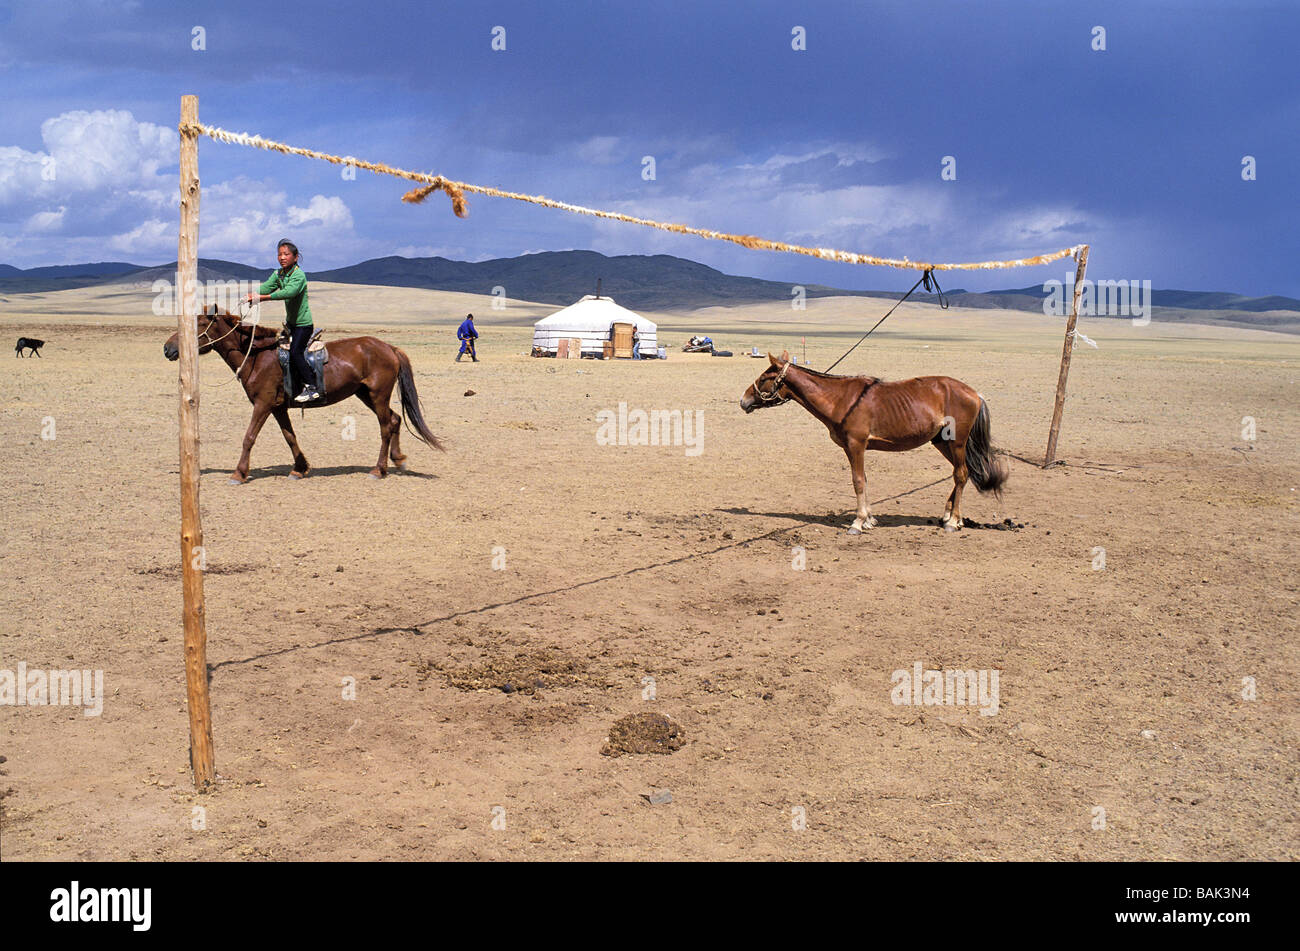 La Mongolie, province de Bulgan, des nomades et des chevaux Banque D'Images